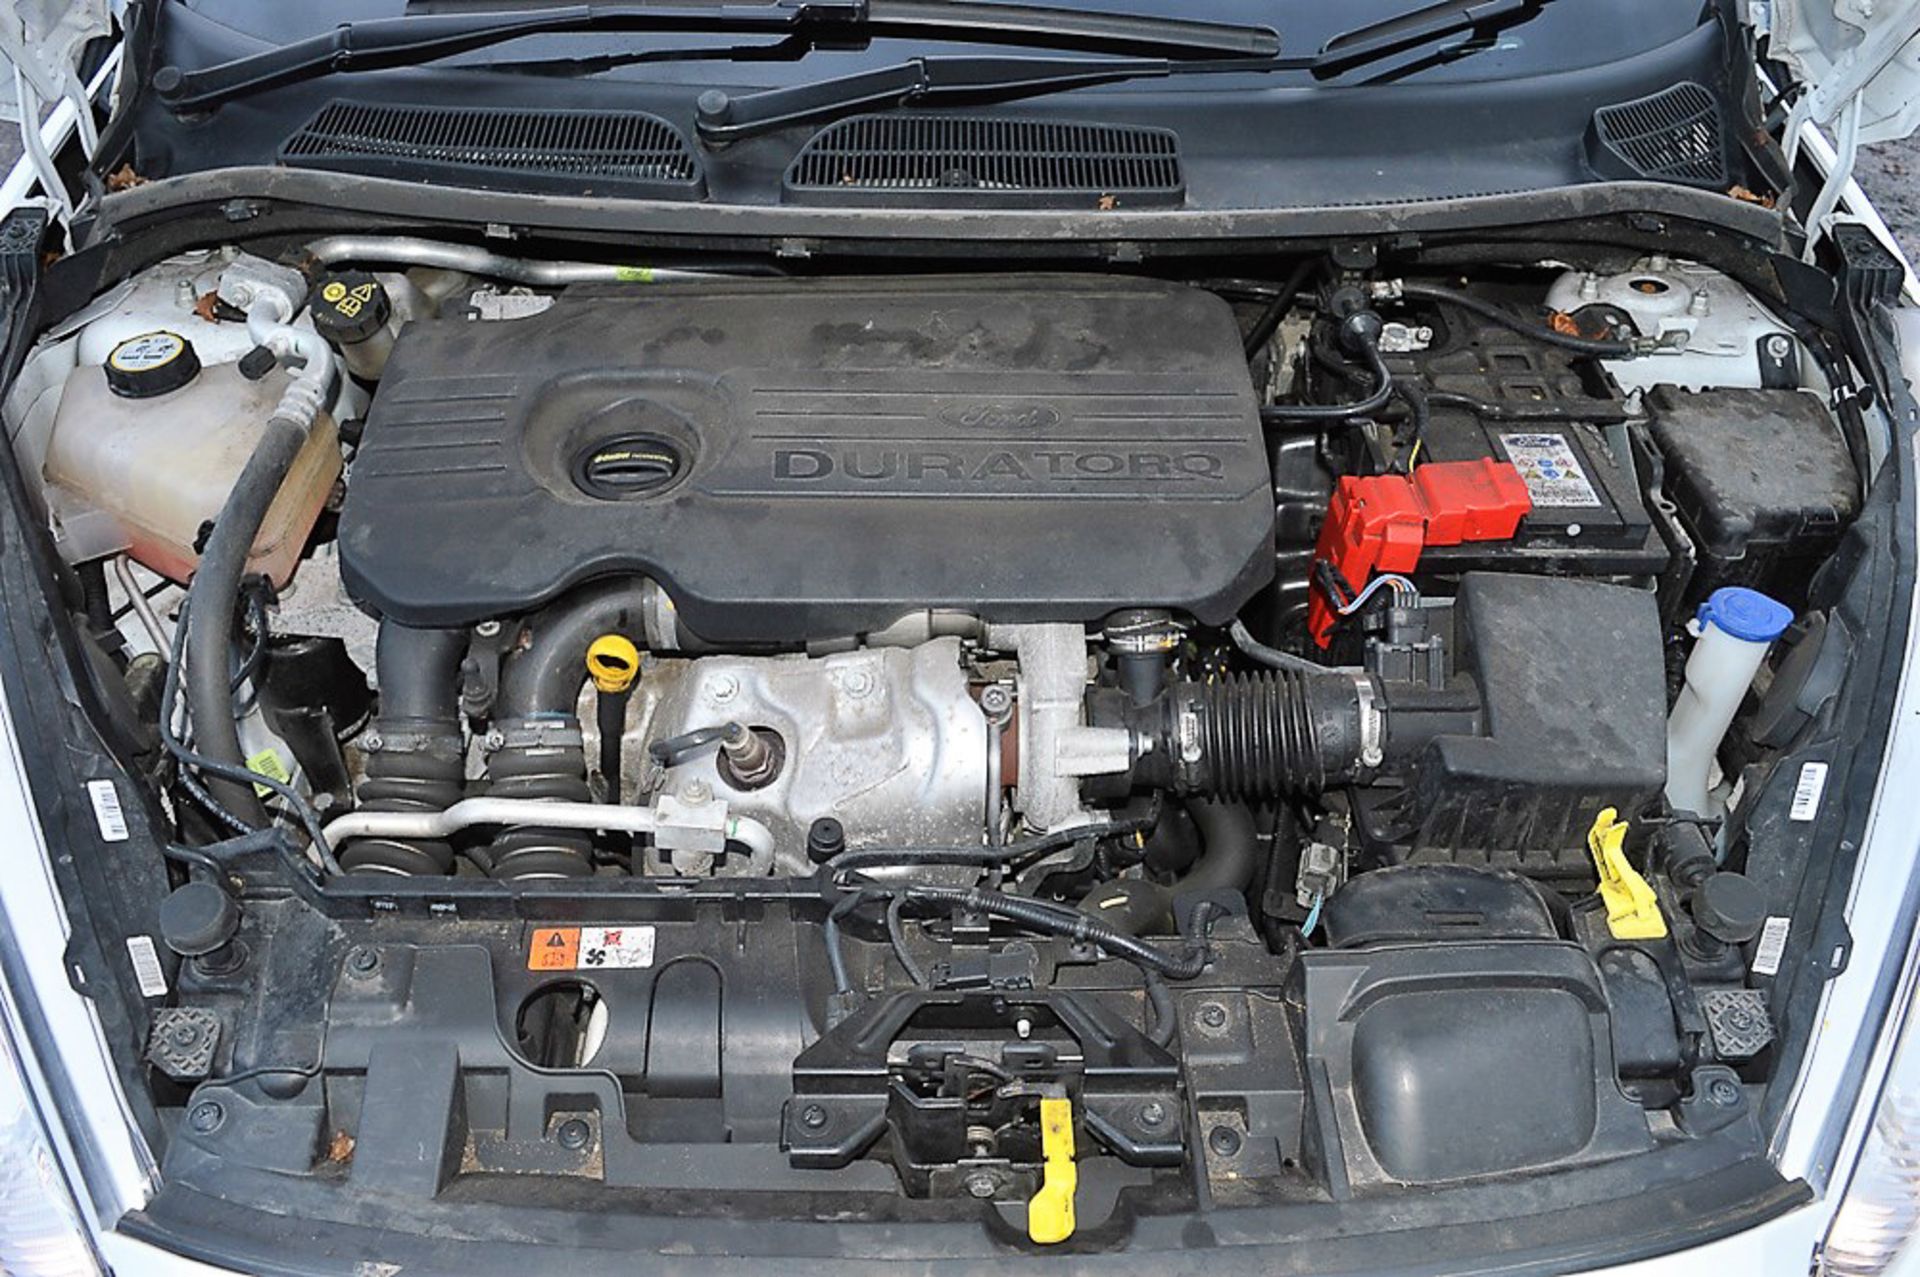 Ford Fiesta Zetec 1.5 TDCi 5 door hatchback car Registration Number: DV65 KWG Date of - Image 12 of 12